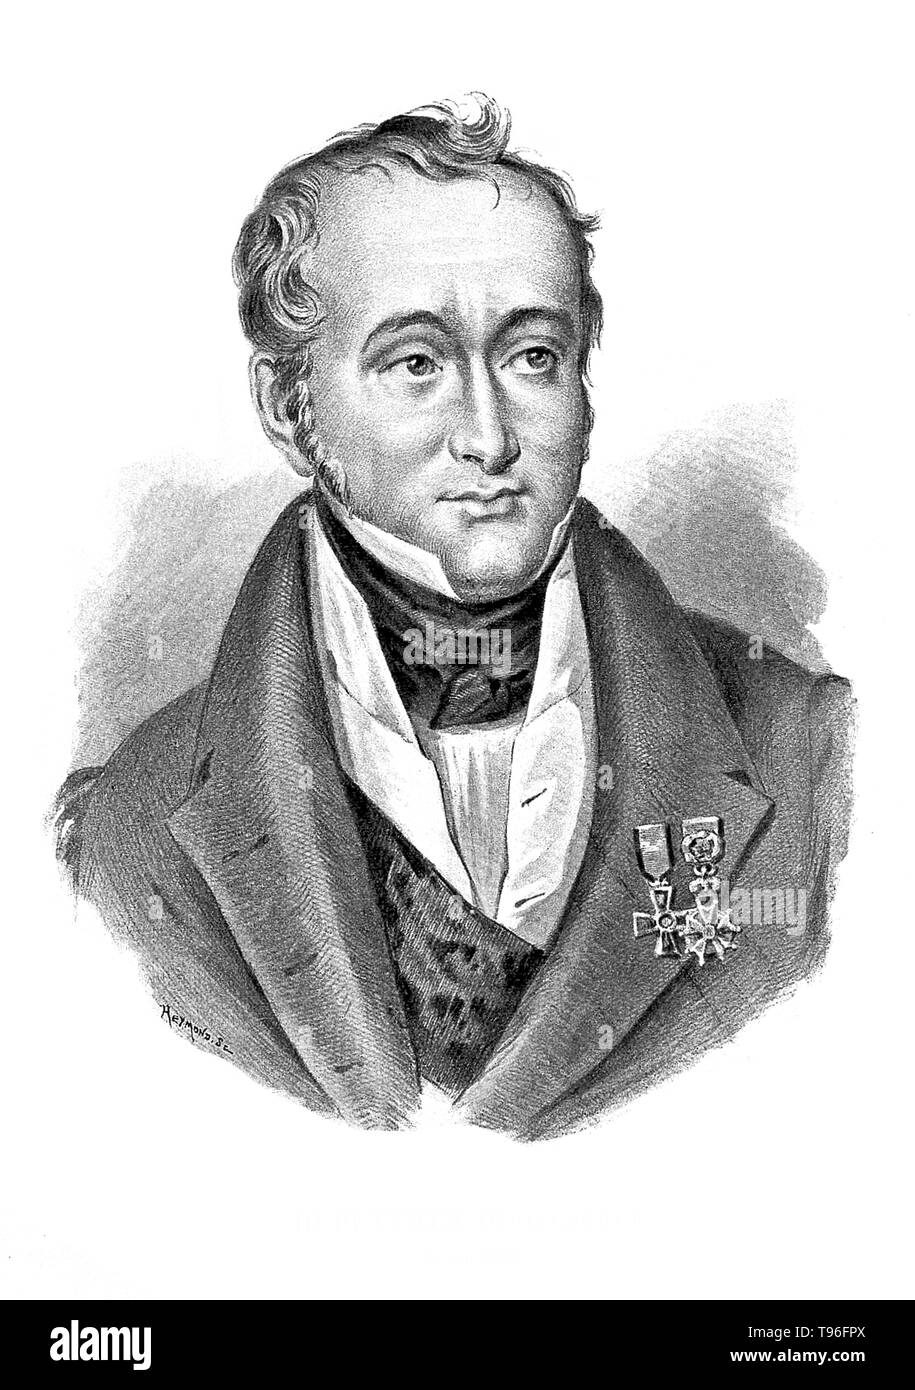 Guillaume Dupuytren Medaillen tragen. Baron Guillaume Dupuytren (5. Oktober 1777 bis 8. Februar 1835) war ein französischer Anatom und Chirurg. Obwohl er viel Wertschätzung für die Behandlung von Napoleon Bonaparte, Hämorrhoiden gewonnen, ist er heute für seine Beschreibung der Dupuytren kontraktur's, die nach ihm und er erstmals auf im Jahr 1831 und veröffentlicht in der Fachzeitschrift "The Lancet" im Jahr 1834 mit dem Namen bekannt ist. Dupuytren war einer der ersten Chirurgen, erfolgreich ein hirnabszesse mittels Trepanation, in dem ein Loch in den Schädel geschnitten wird, ablassen, und er verwendete auch die Methode, die Anfälle zu behandeln. Stockfoto